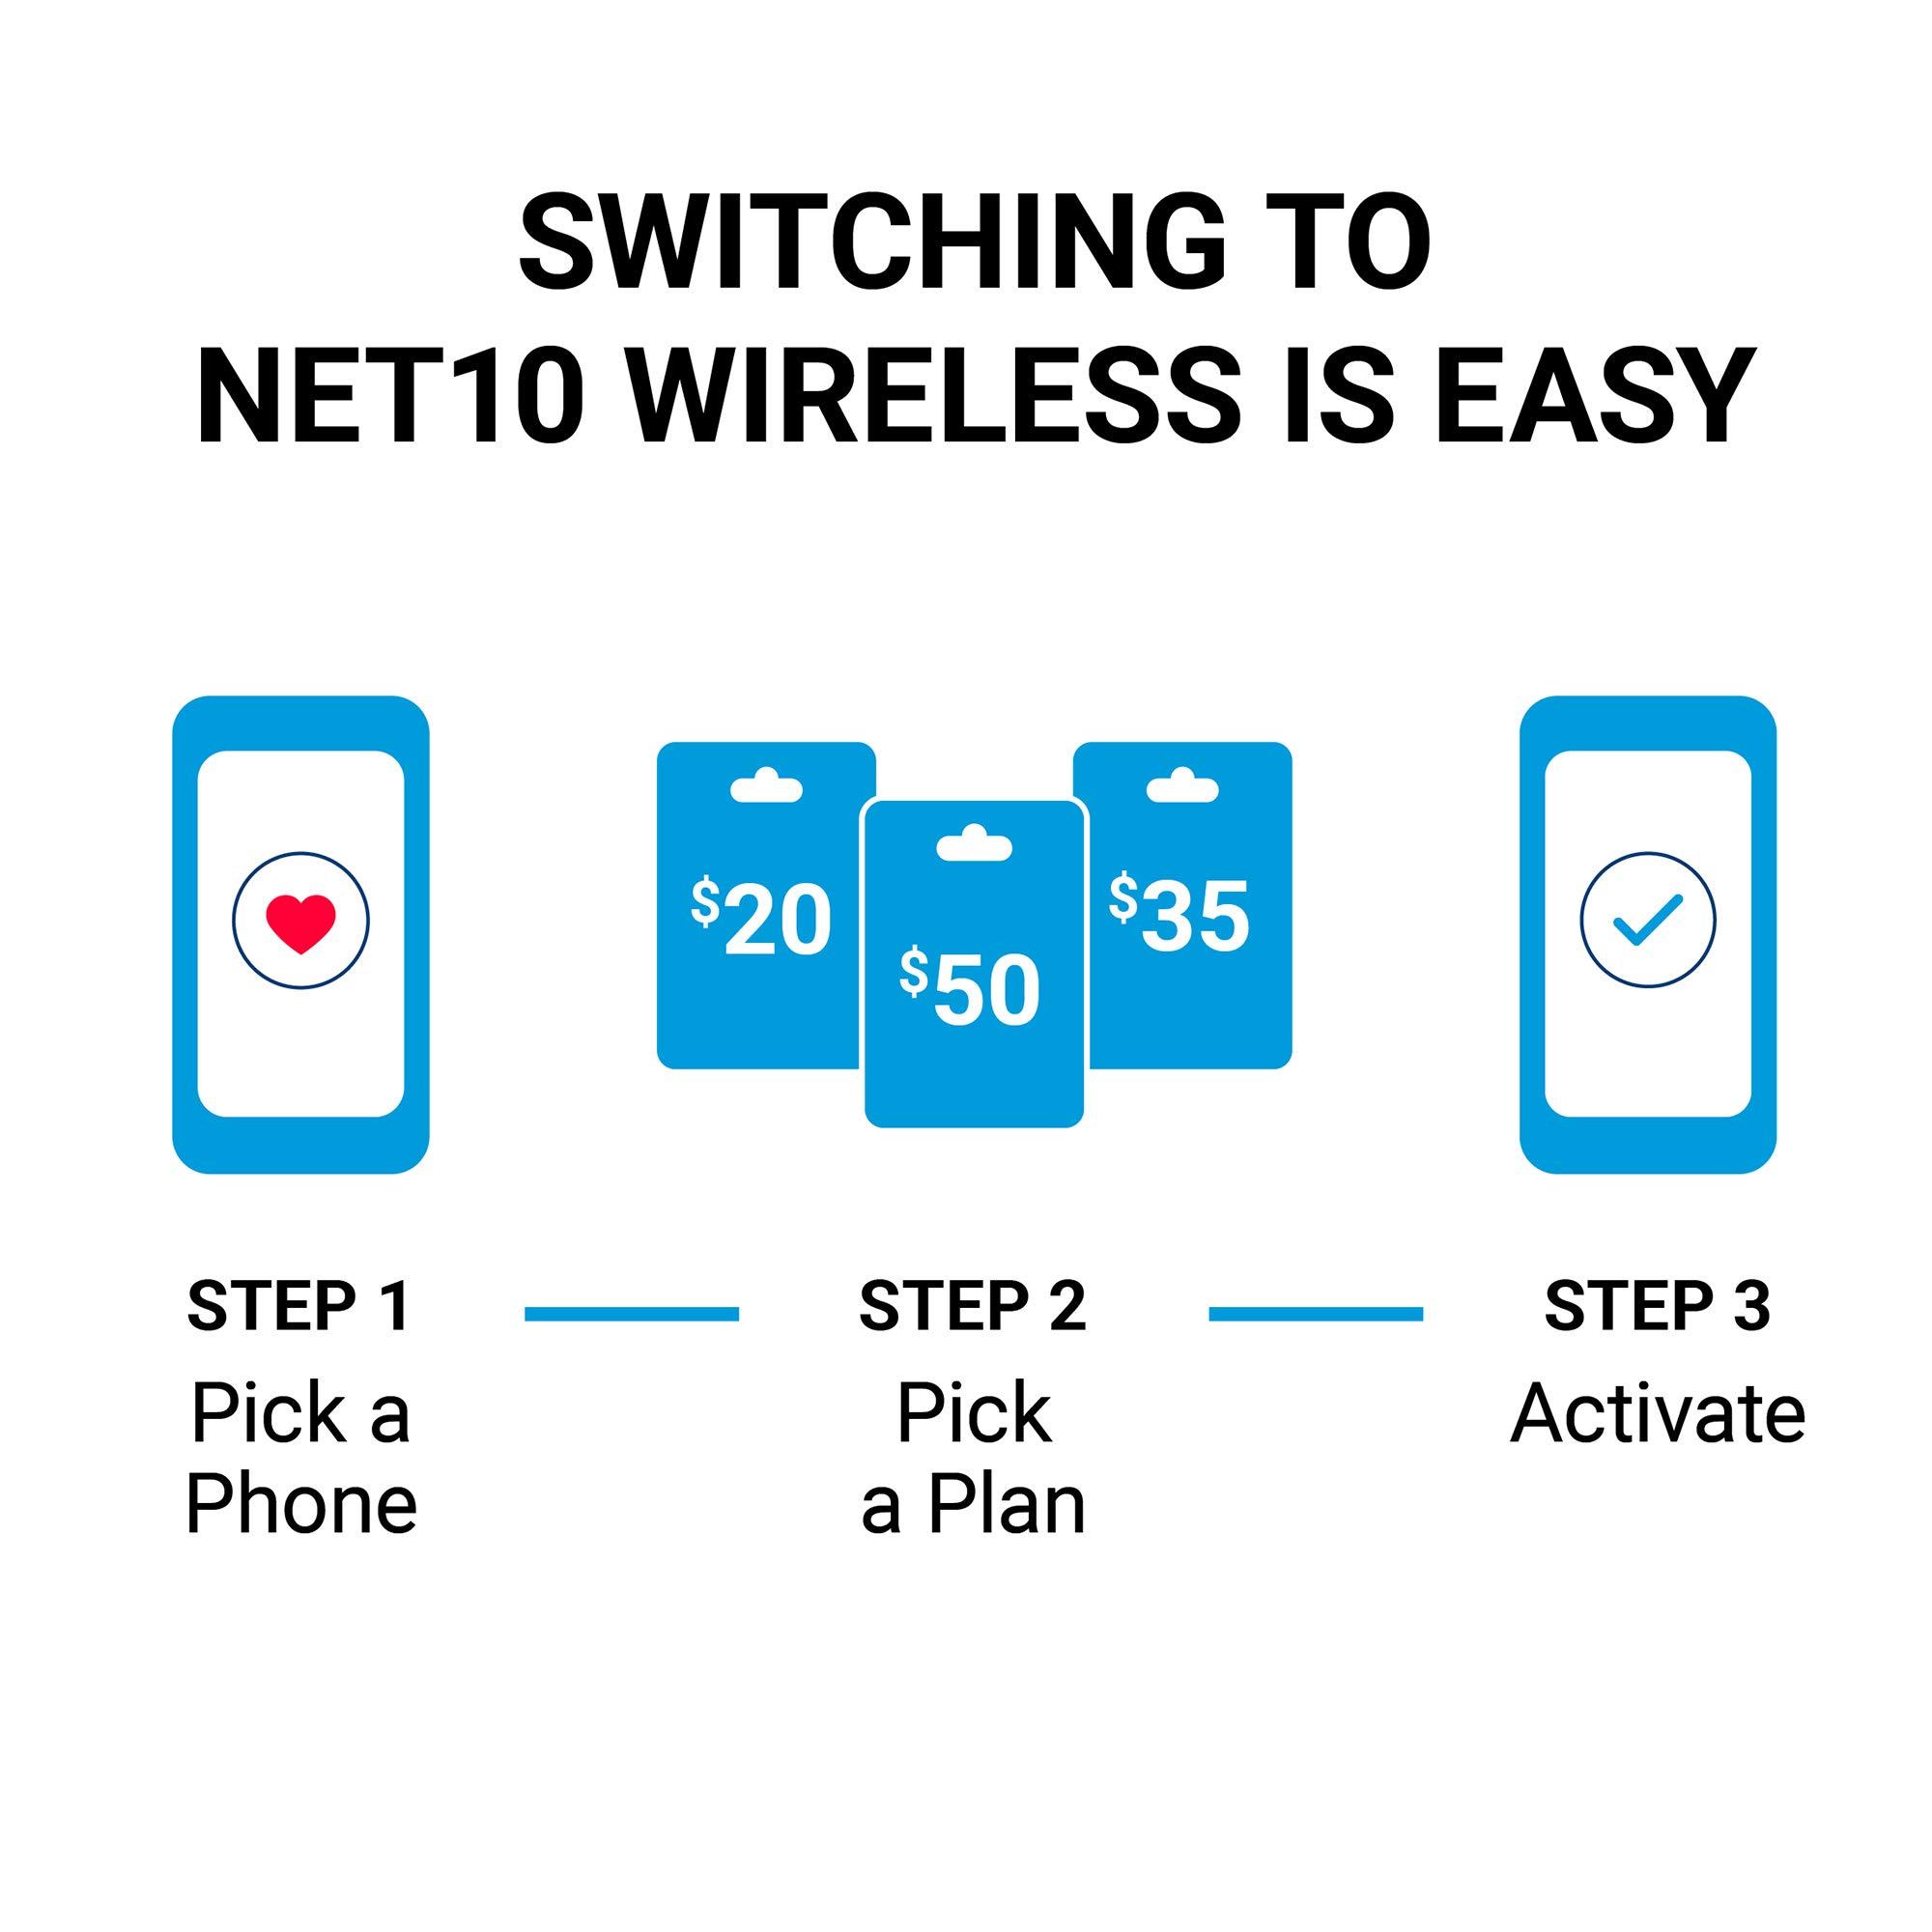 Net10 Samsung Galaxy A10e 4G LTE Prepaid Smartphone (Locked) - Black - 32GB - SIM Card Included - CDMA